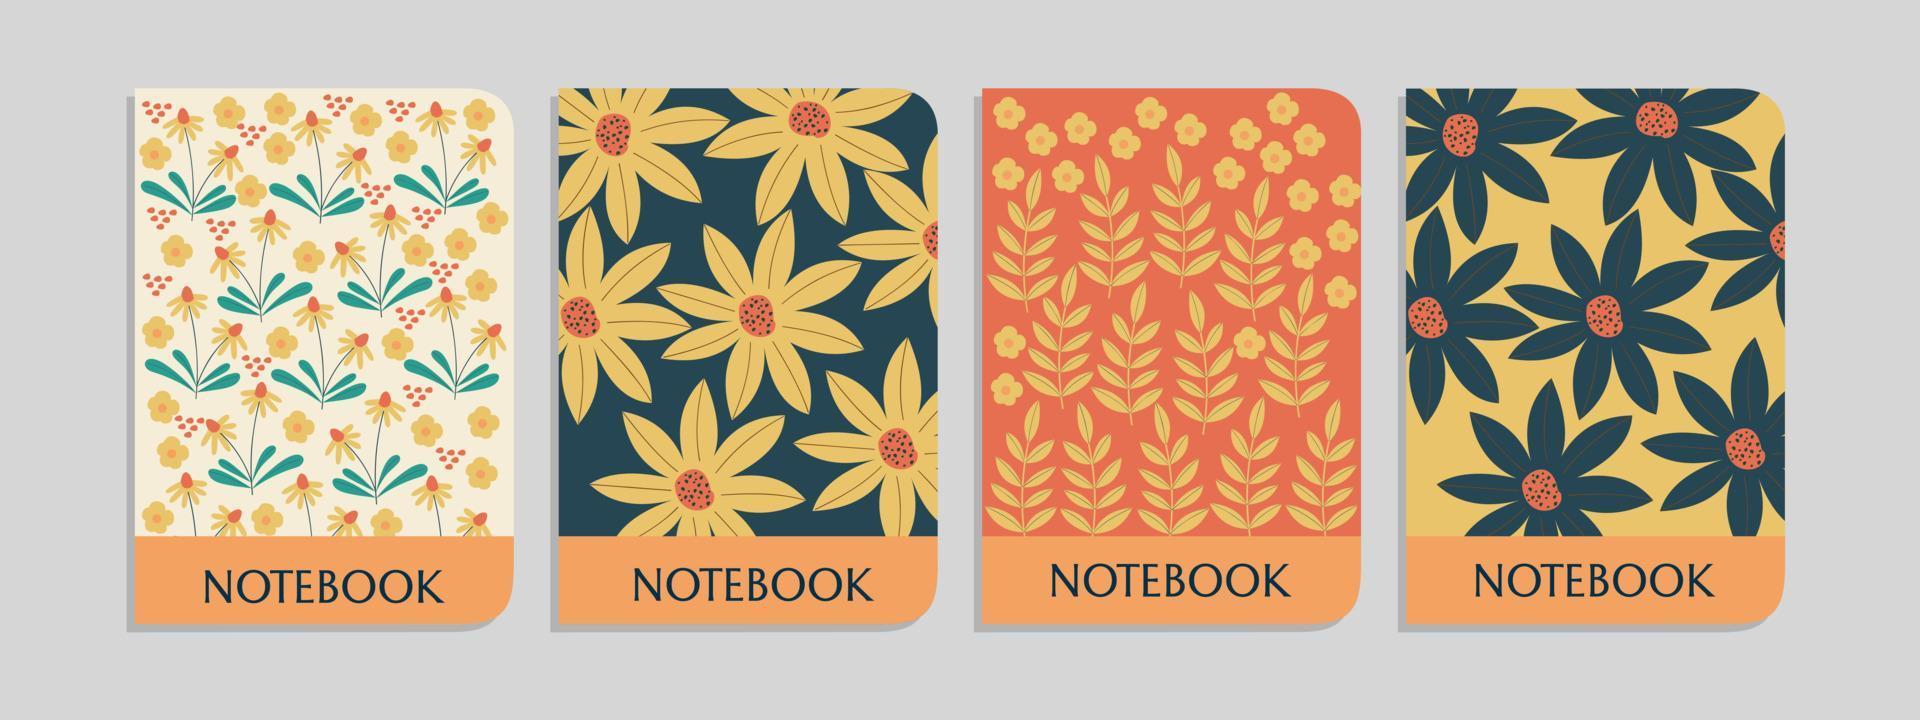 uppsättning av botanisk anteckningsbok omslag mallar med söt och Söt mönster.för anteckningsböcker, planerare, broschyrer, böcker, kataloger vektor